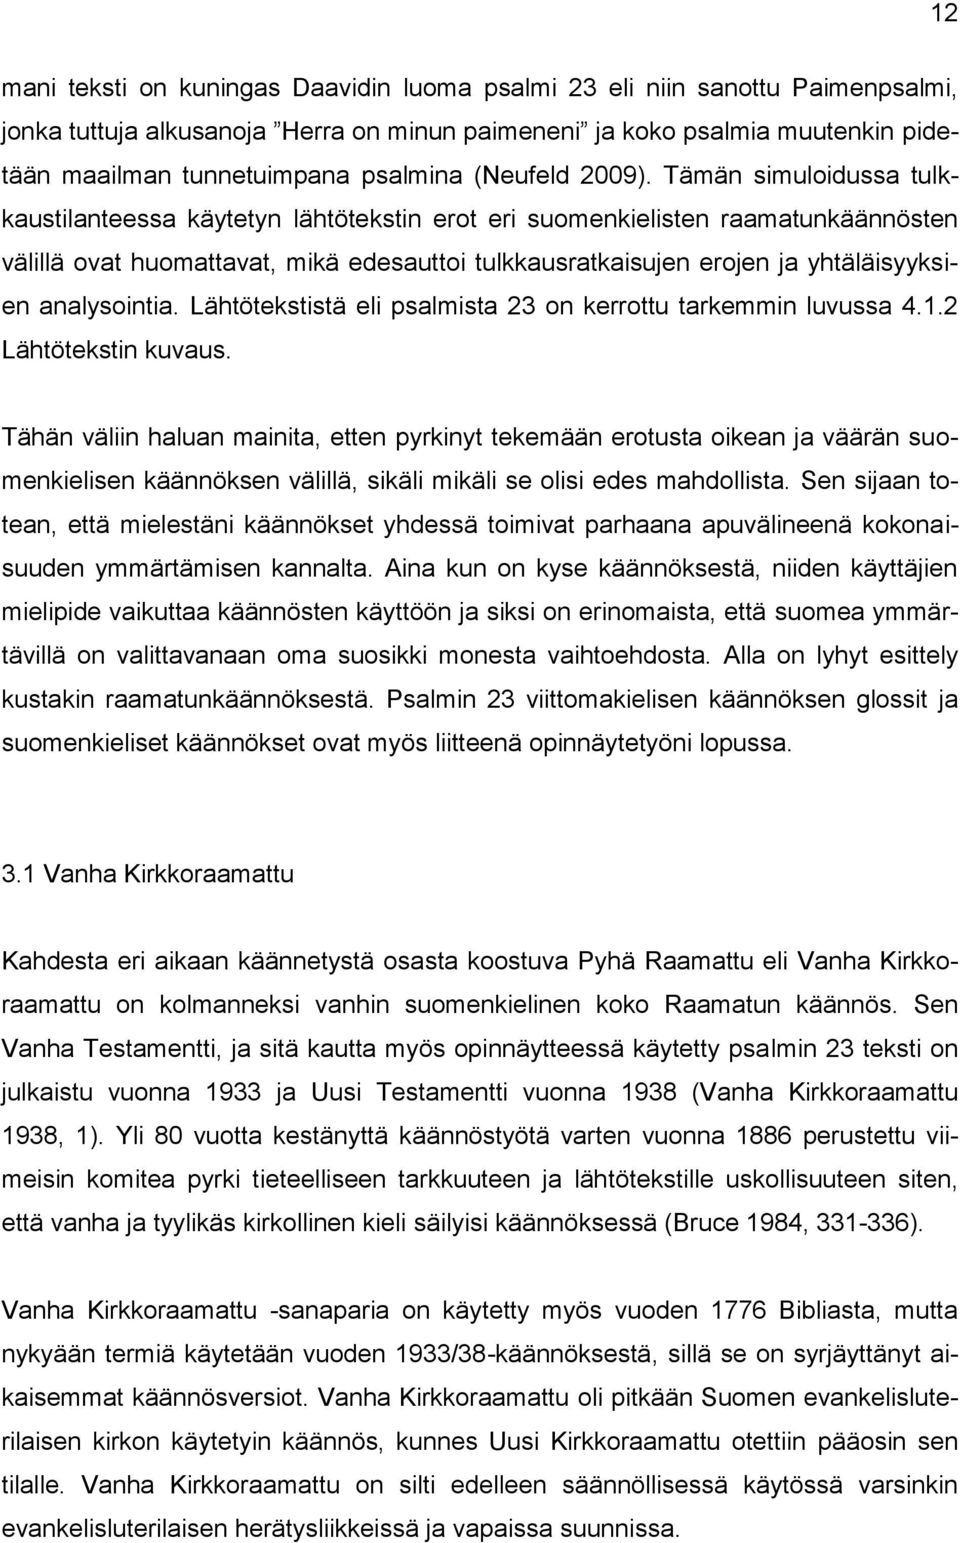 Tämän simuloidussa tulkkaustilanteessa käytetyn lähtötekstin erot eri suomenkielisten raamatunkäännösten välillä ovat huomattavat, mikä edesauttoi tulkkausratkaisujen erojen ja yhtäläisyyksien